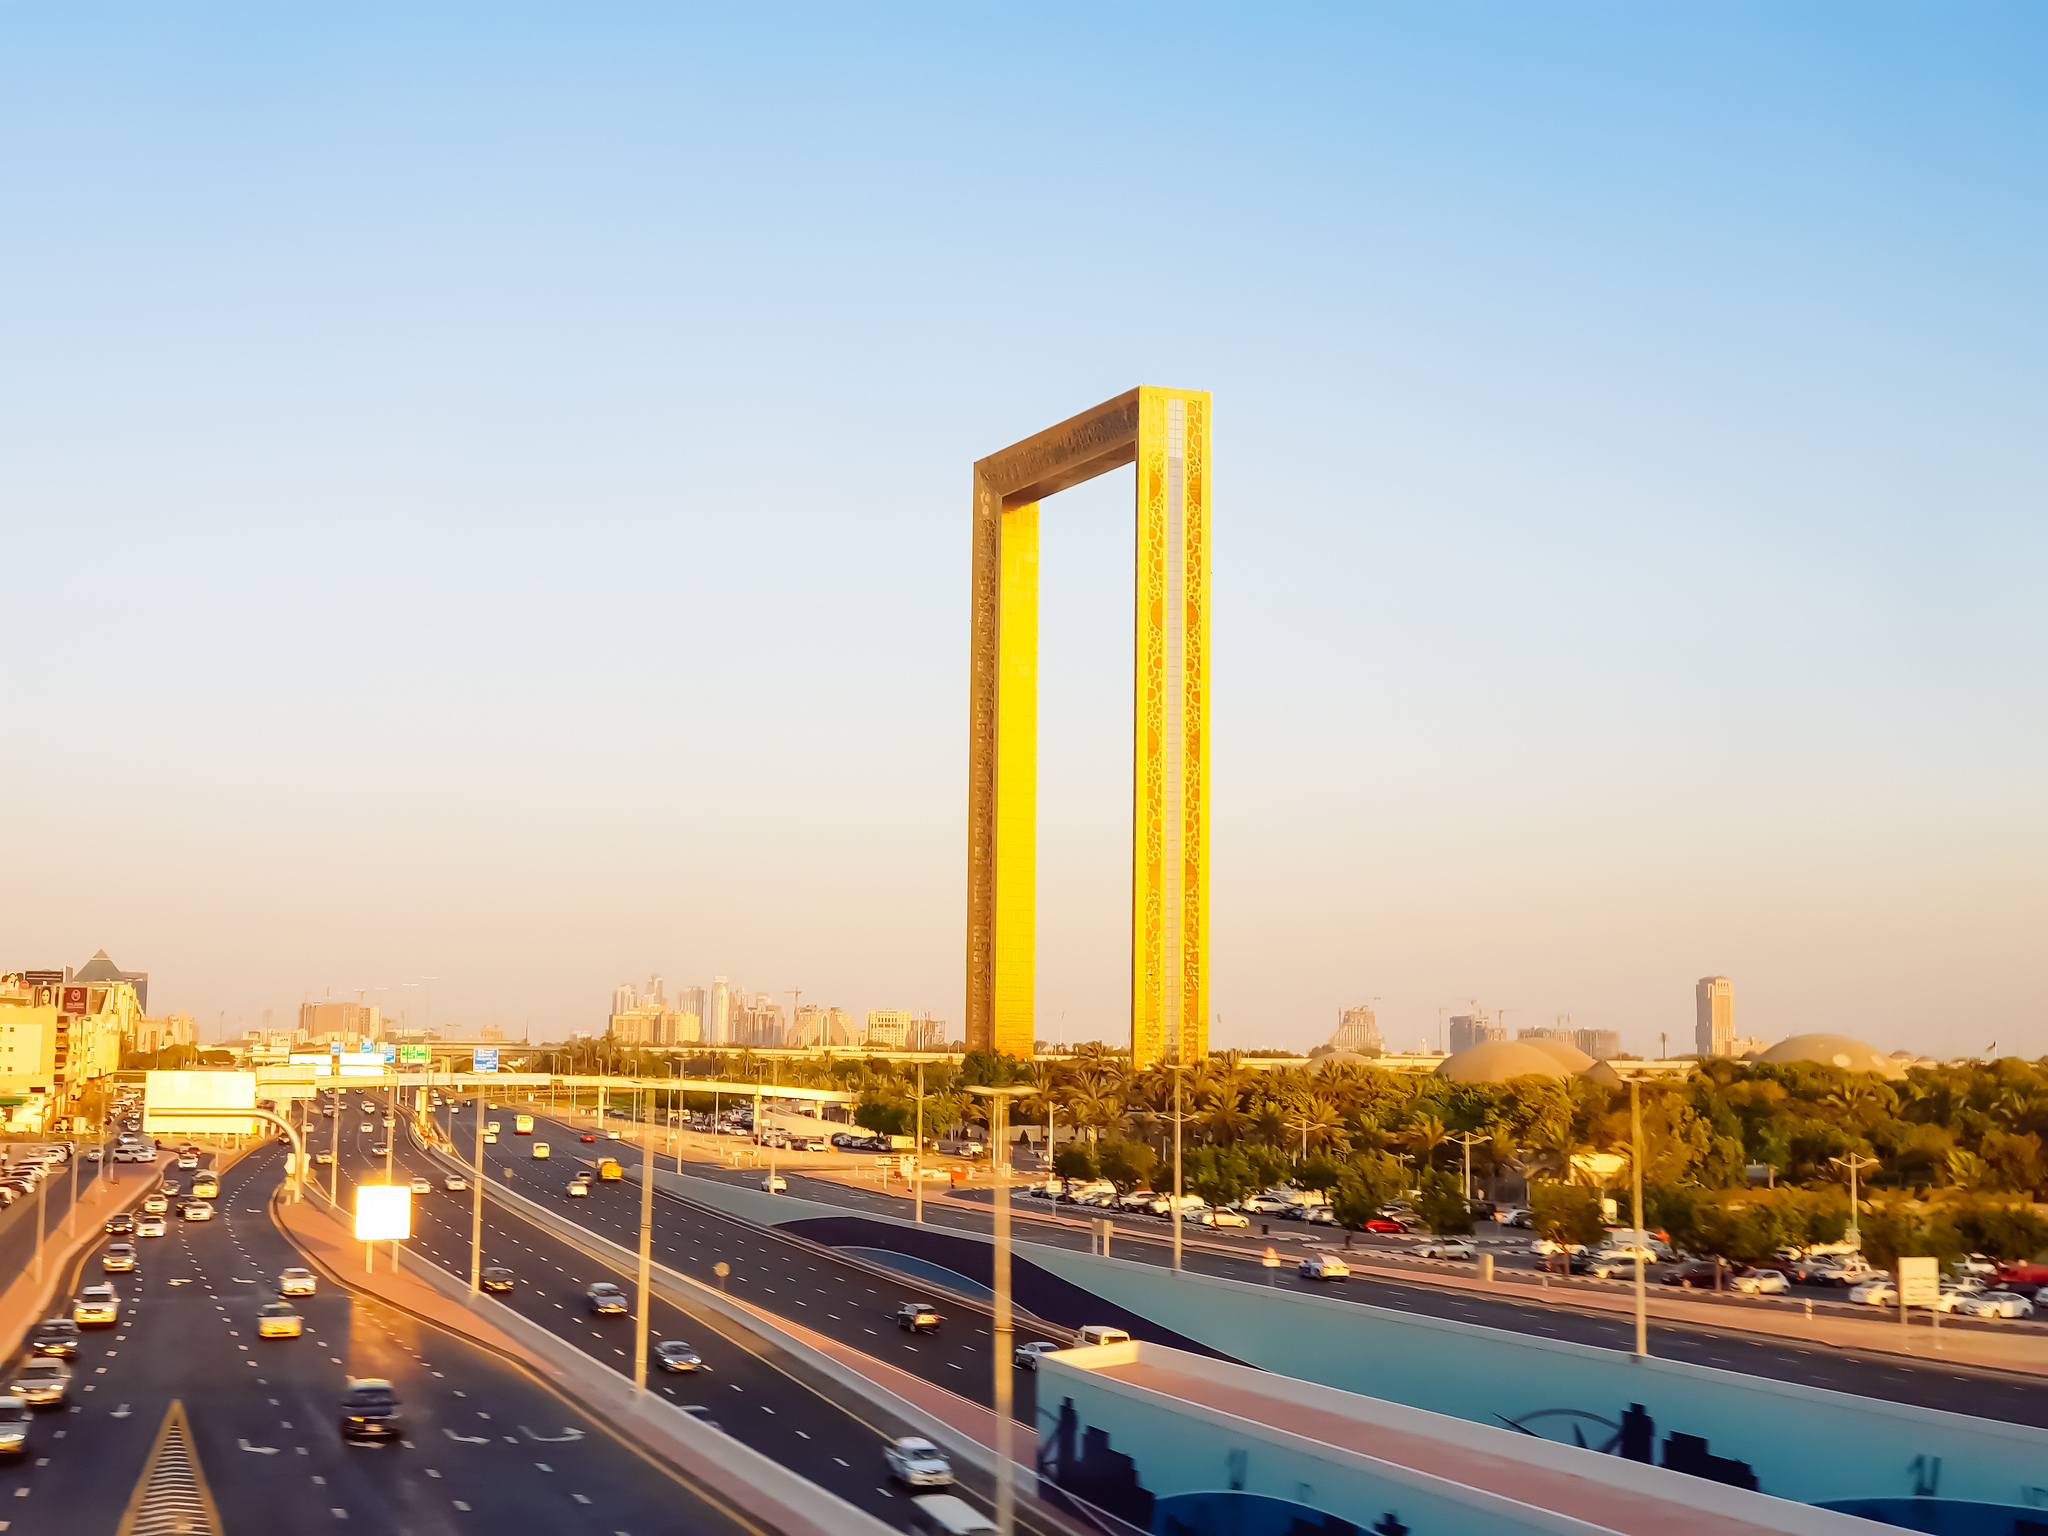 Дубай golden. Дубай фрейм. Золотая арка Дубай. "Дубайская рама", Дубай. Дубайская рамка Дубай.